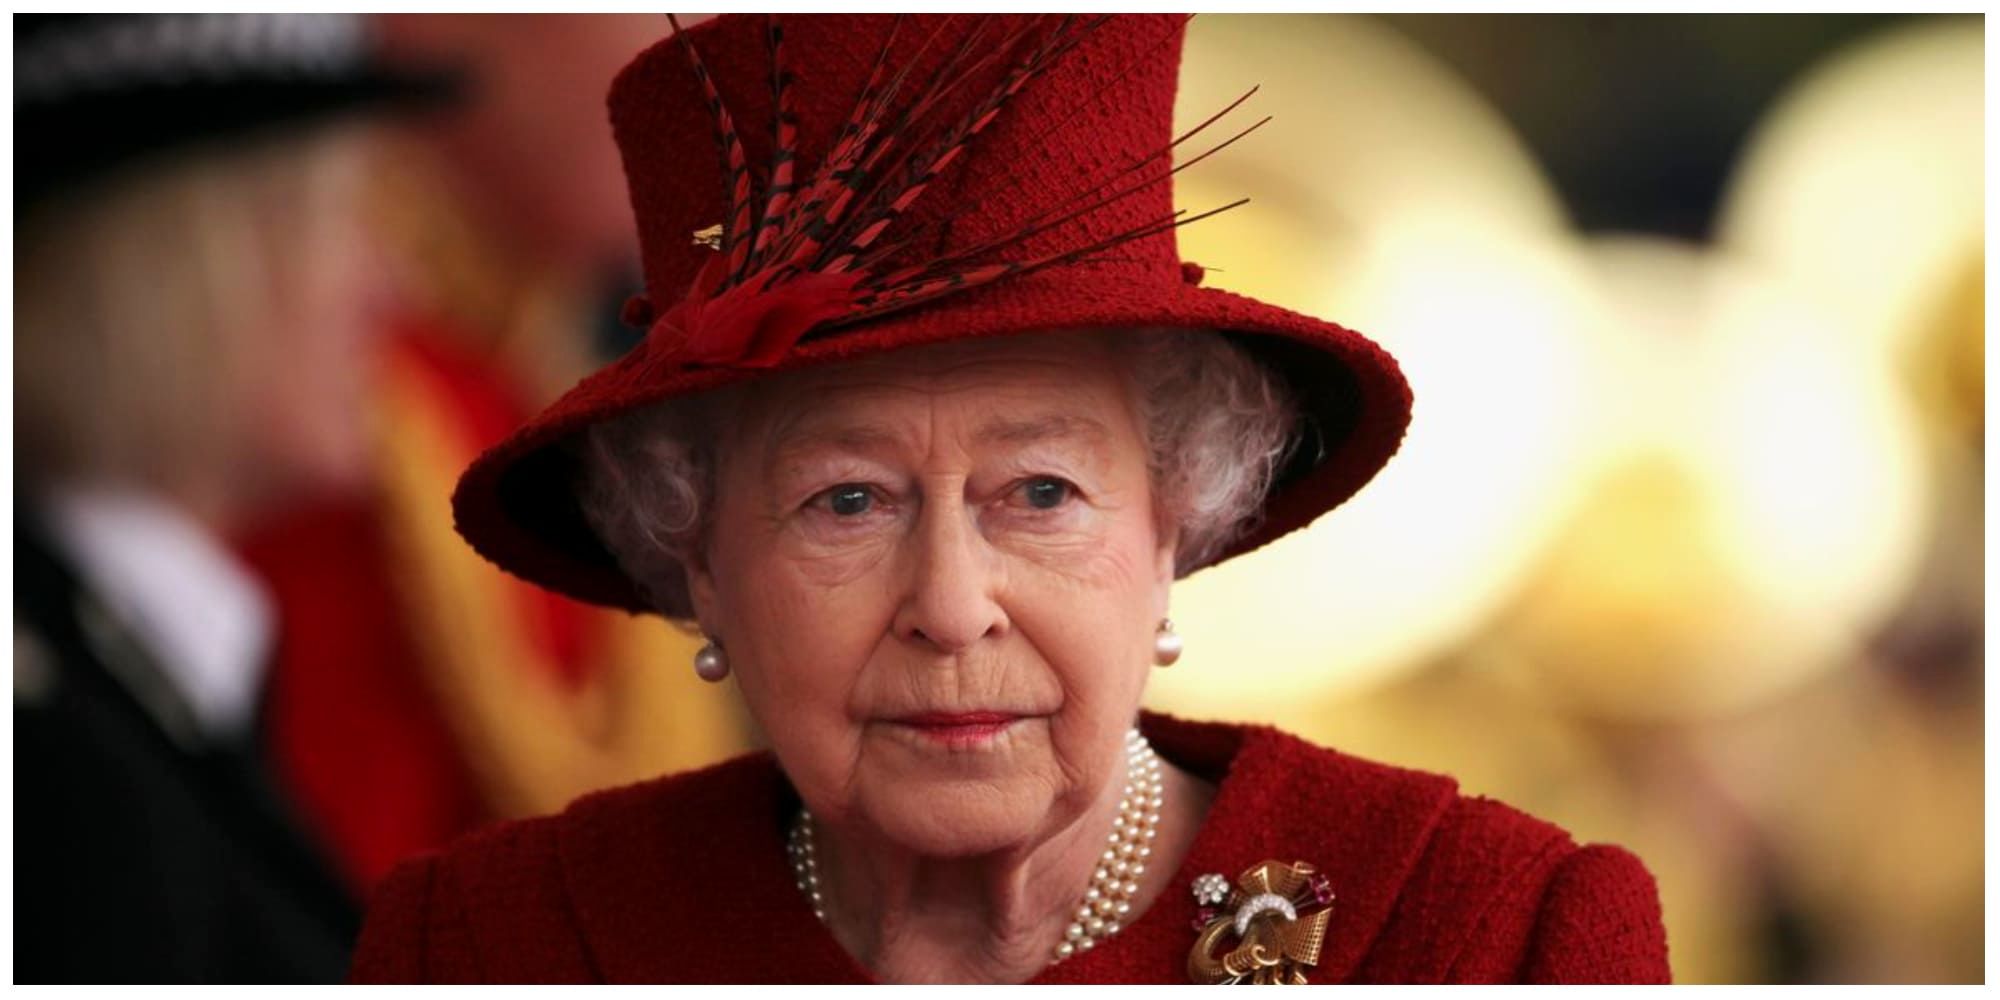 اسب ملکه انگلیس به تابوت وی ادای احترام کرد/ عکس